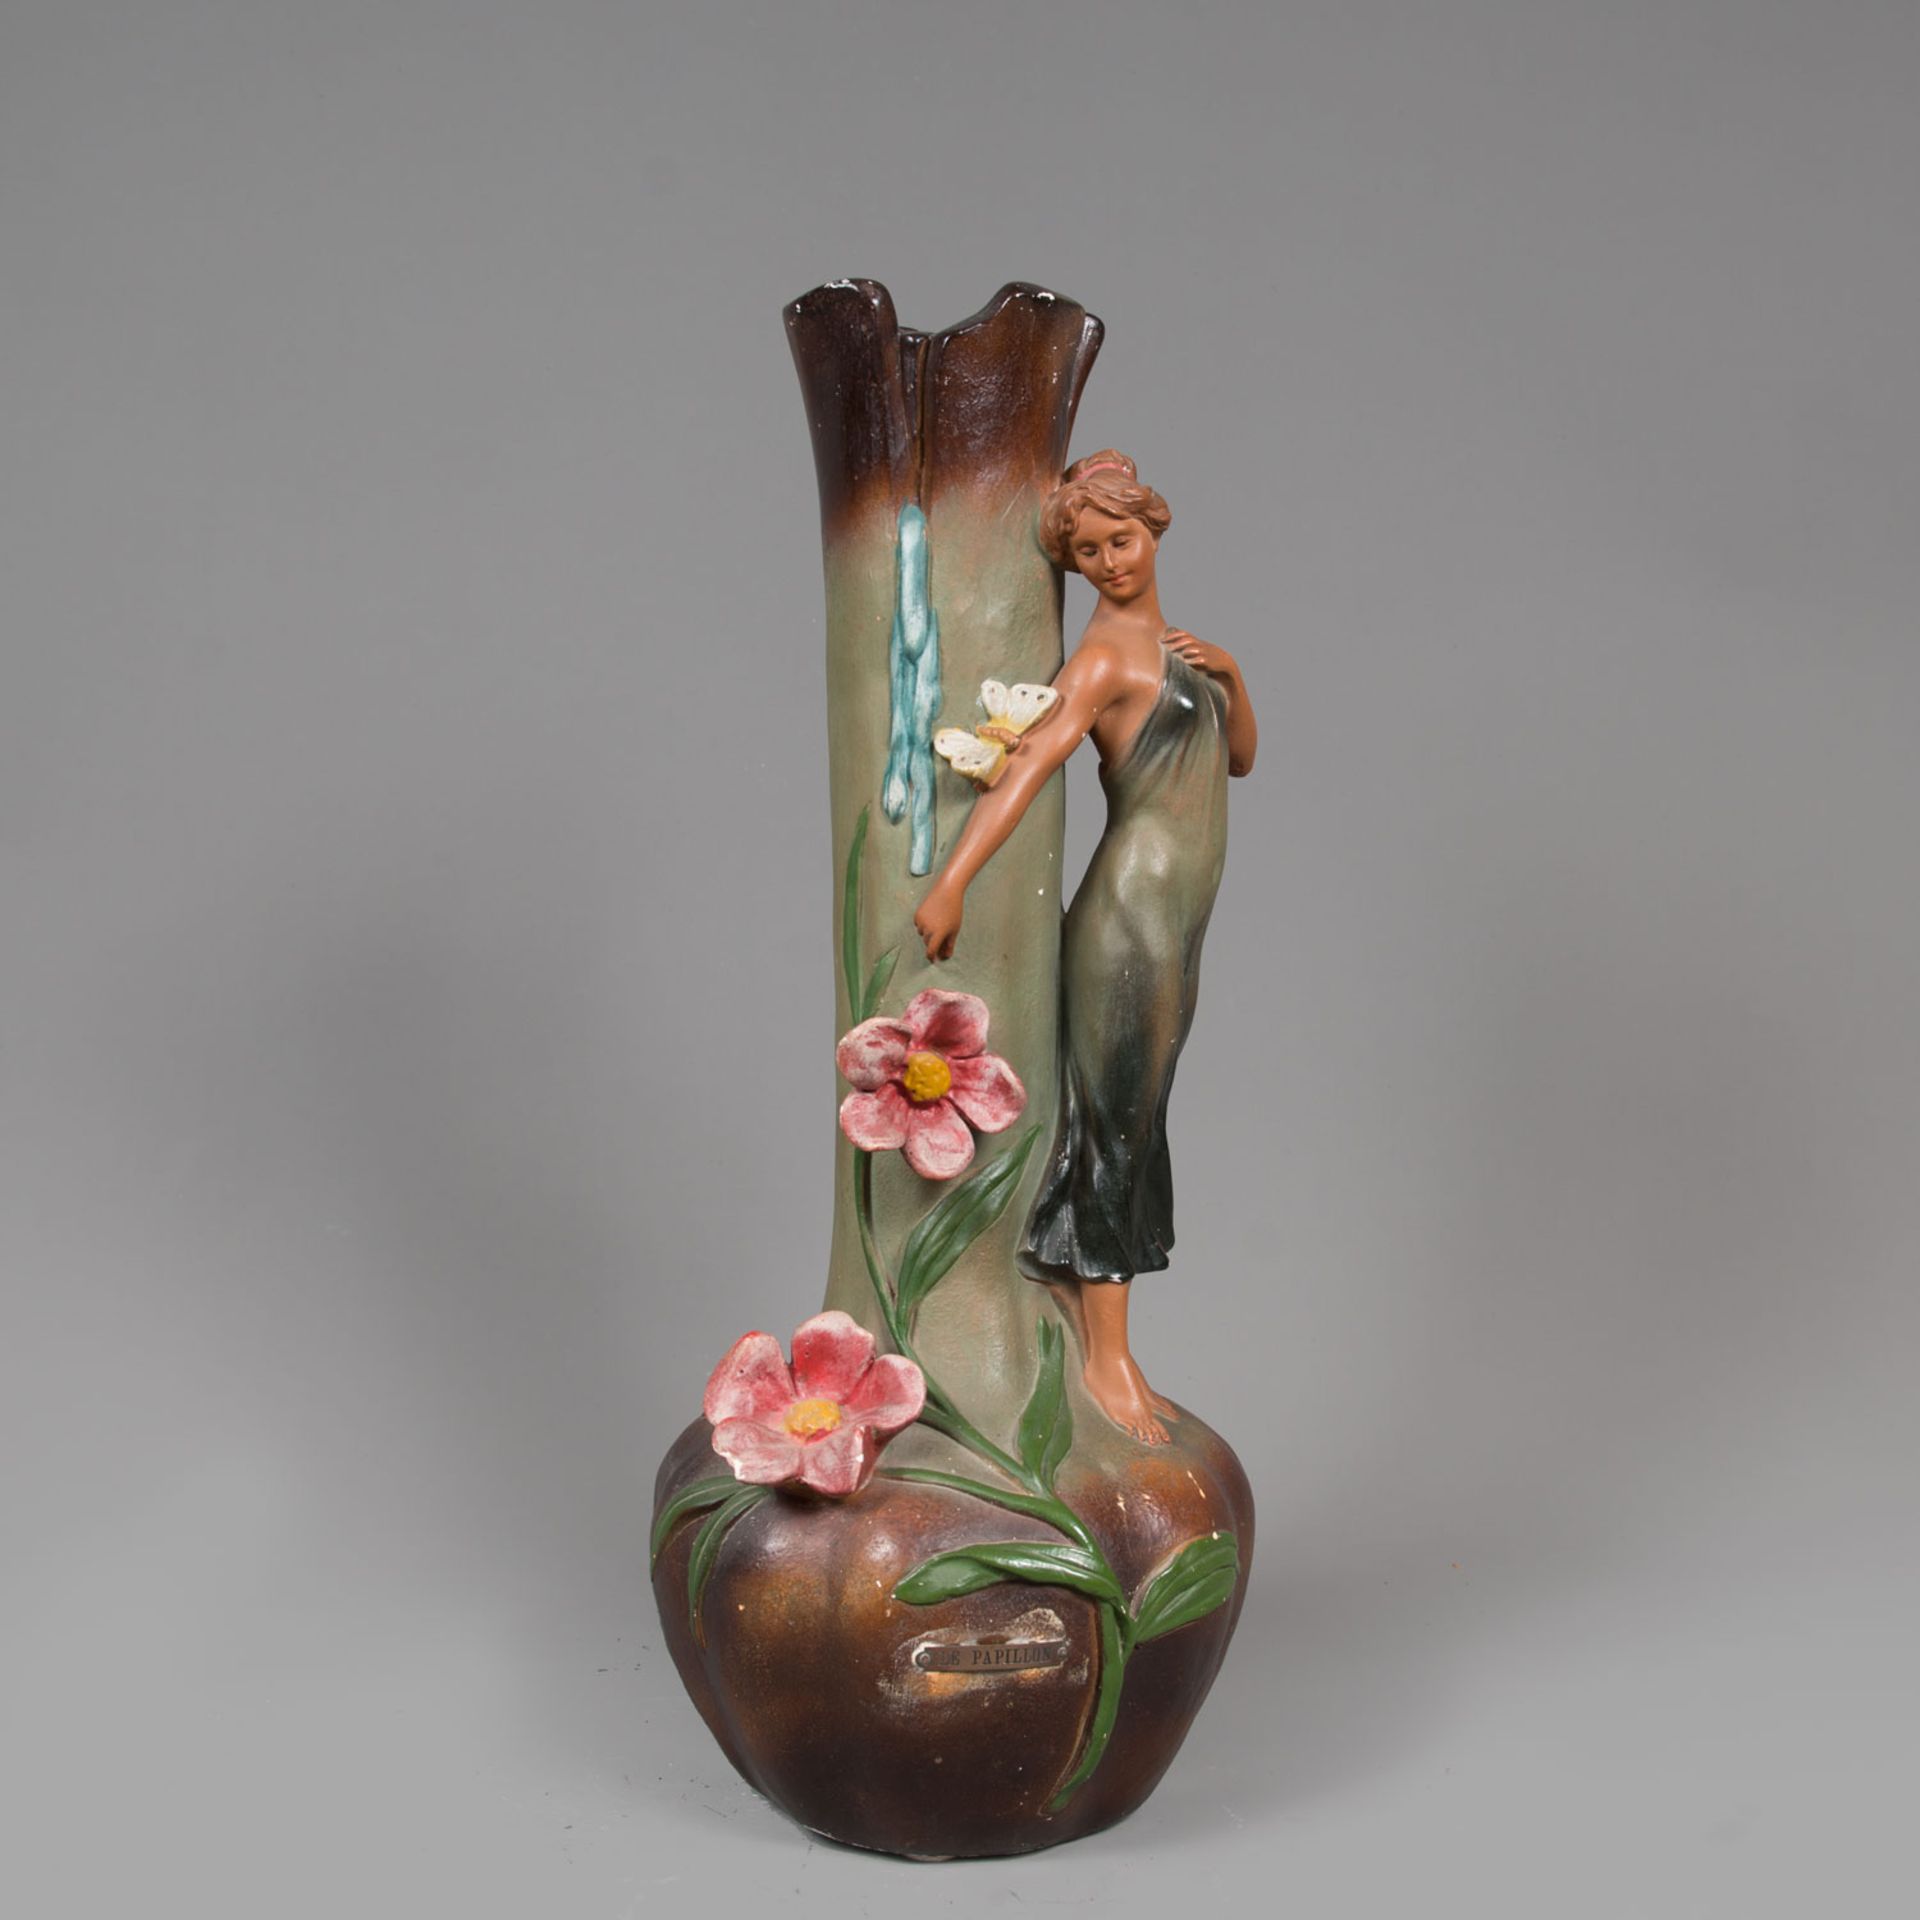 Pair of Jugendstil Vases - Image 2 of 3